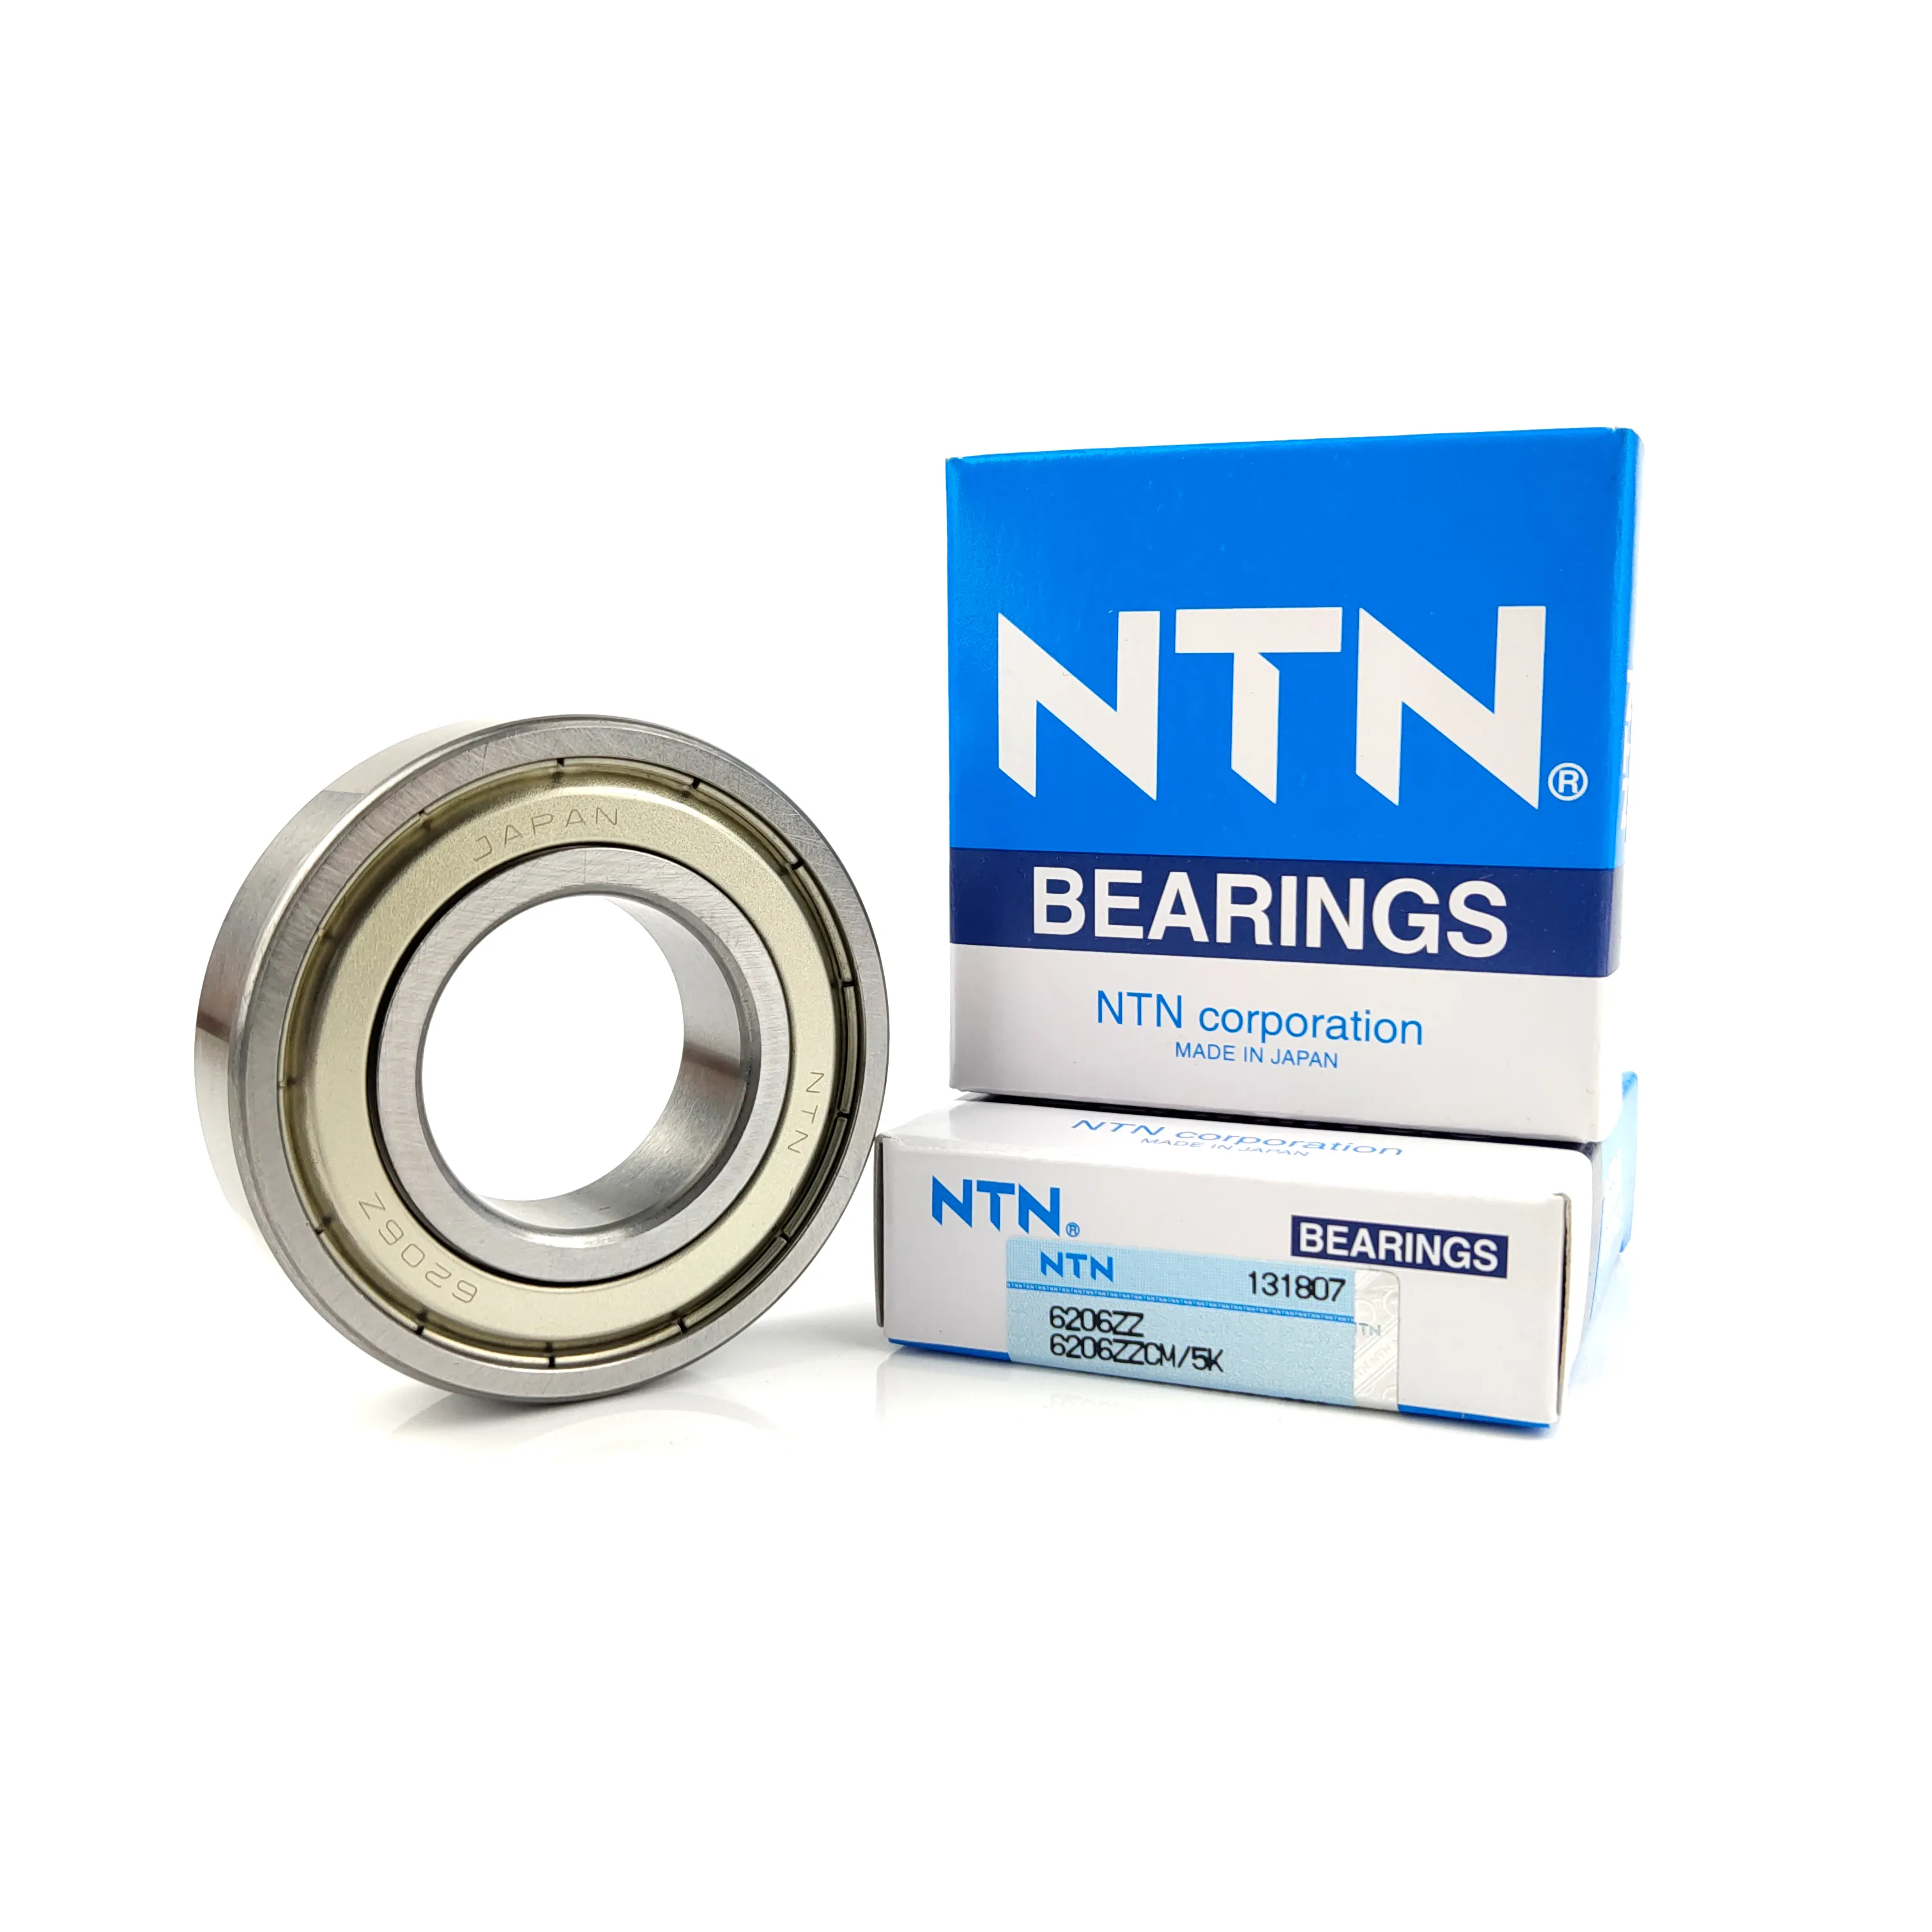 Original Japan NTN 6201 6202 6203 single row Deep groove ball bearing 6202 6204 6205 6206 bearing